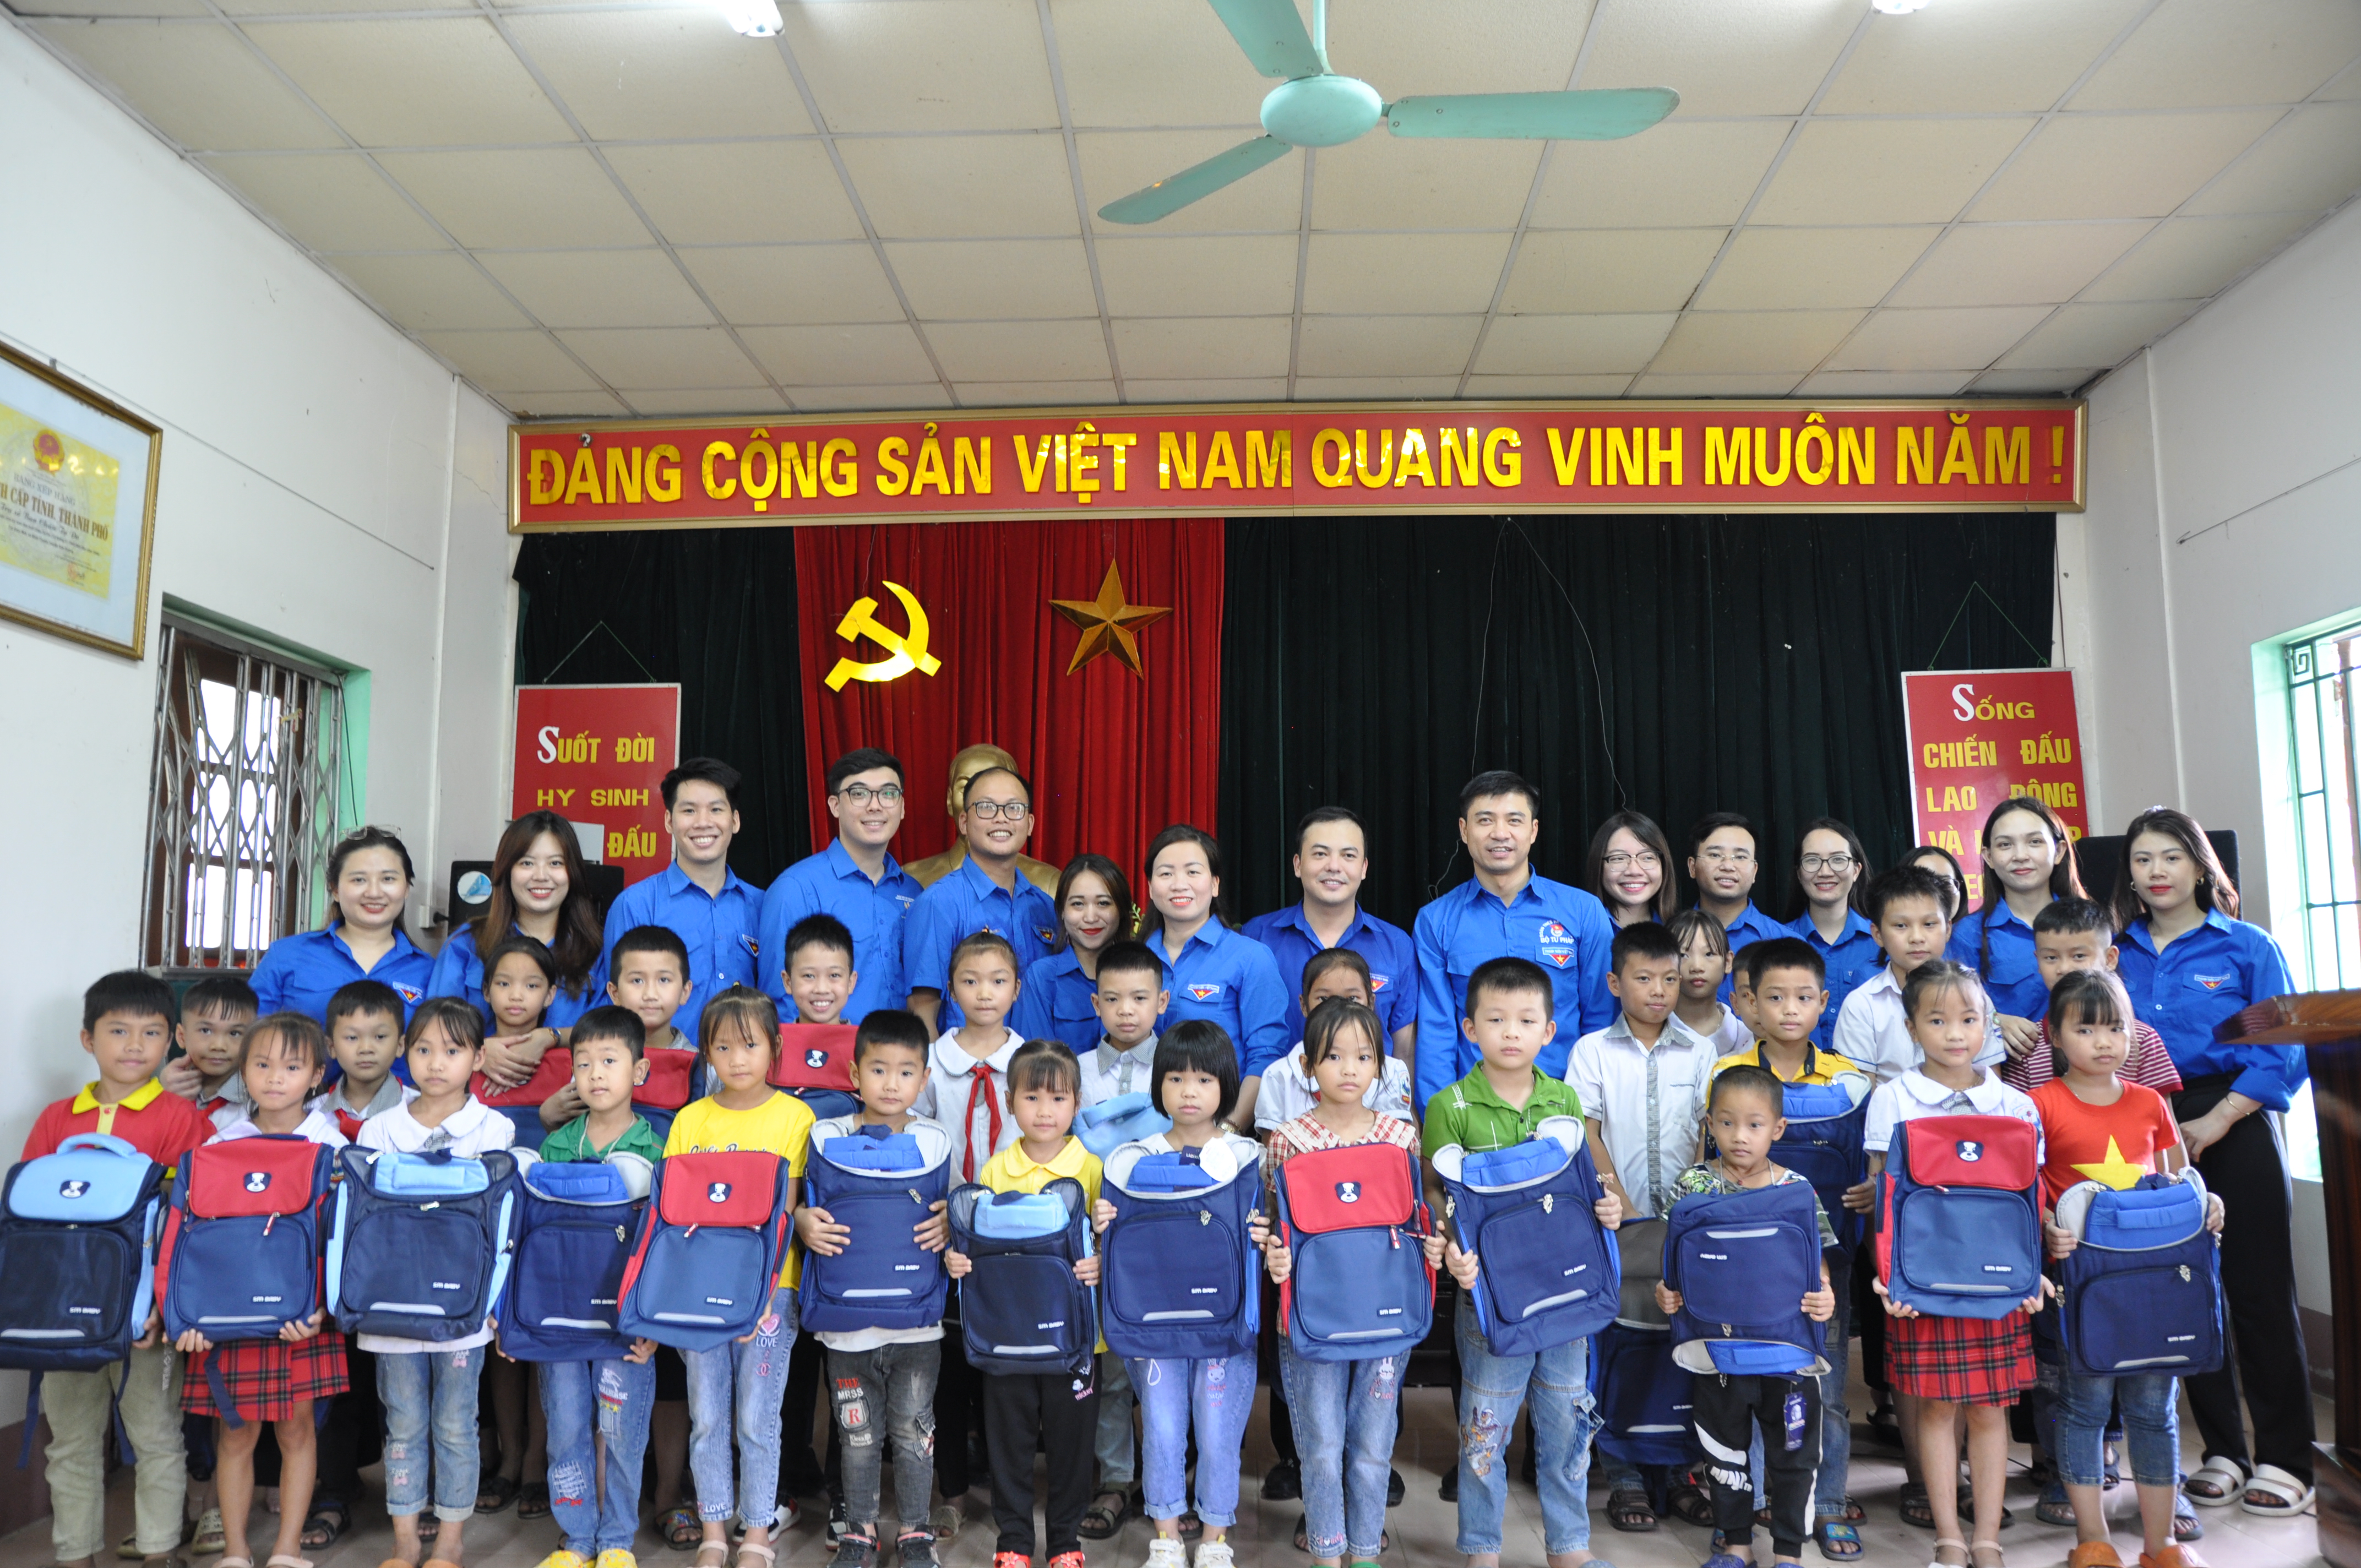 30 suất quà cho các cháu học sinh có hoàn cảnh khó khăn, nhưng có thành tích học tập tốt của Trường tiểu học xã Minh Thanh, huyện Sơn Dương, tỉnh Tuyên Quang.